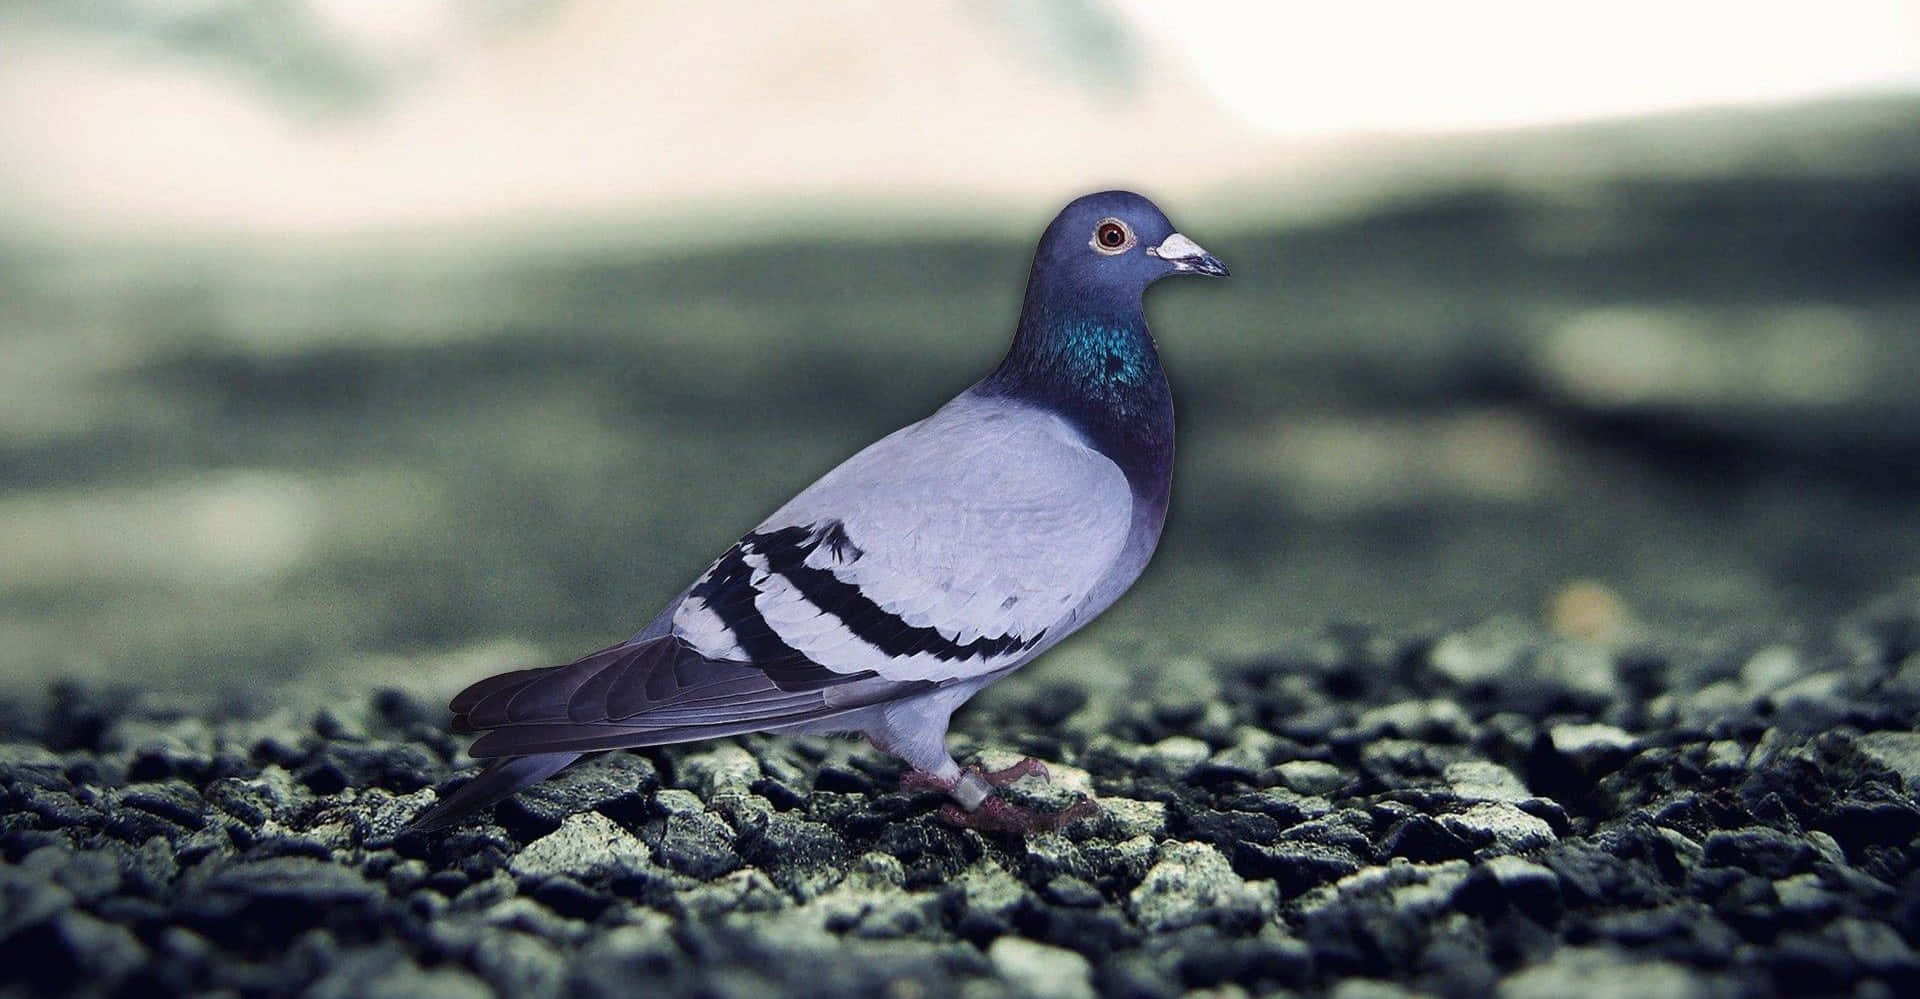 A beautiful pigeon taking flight.